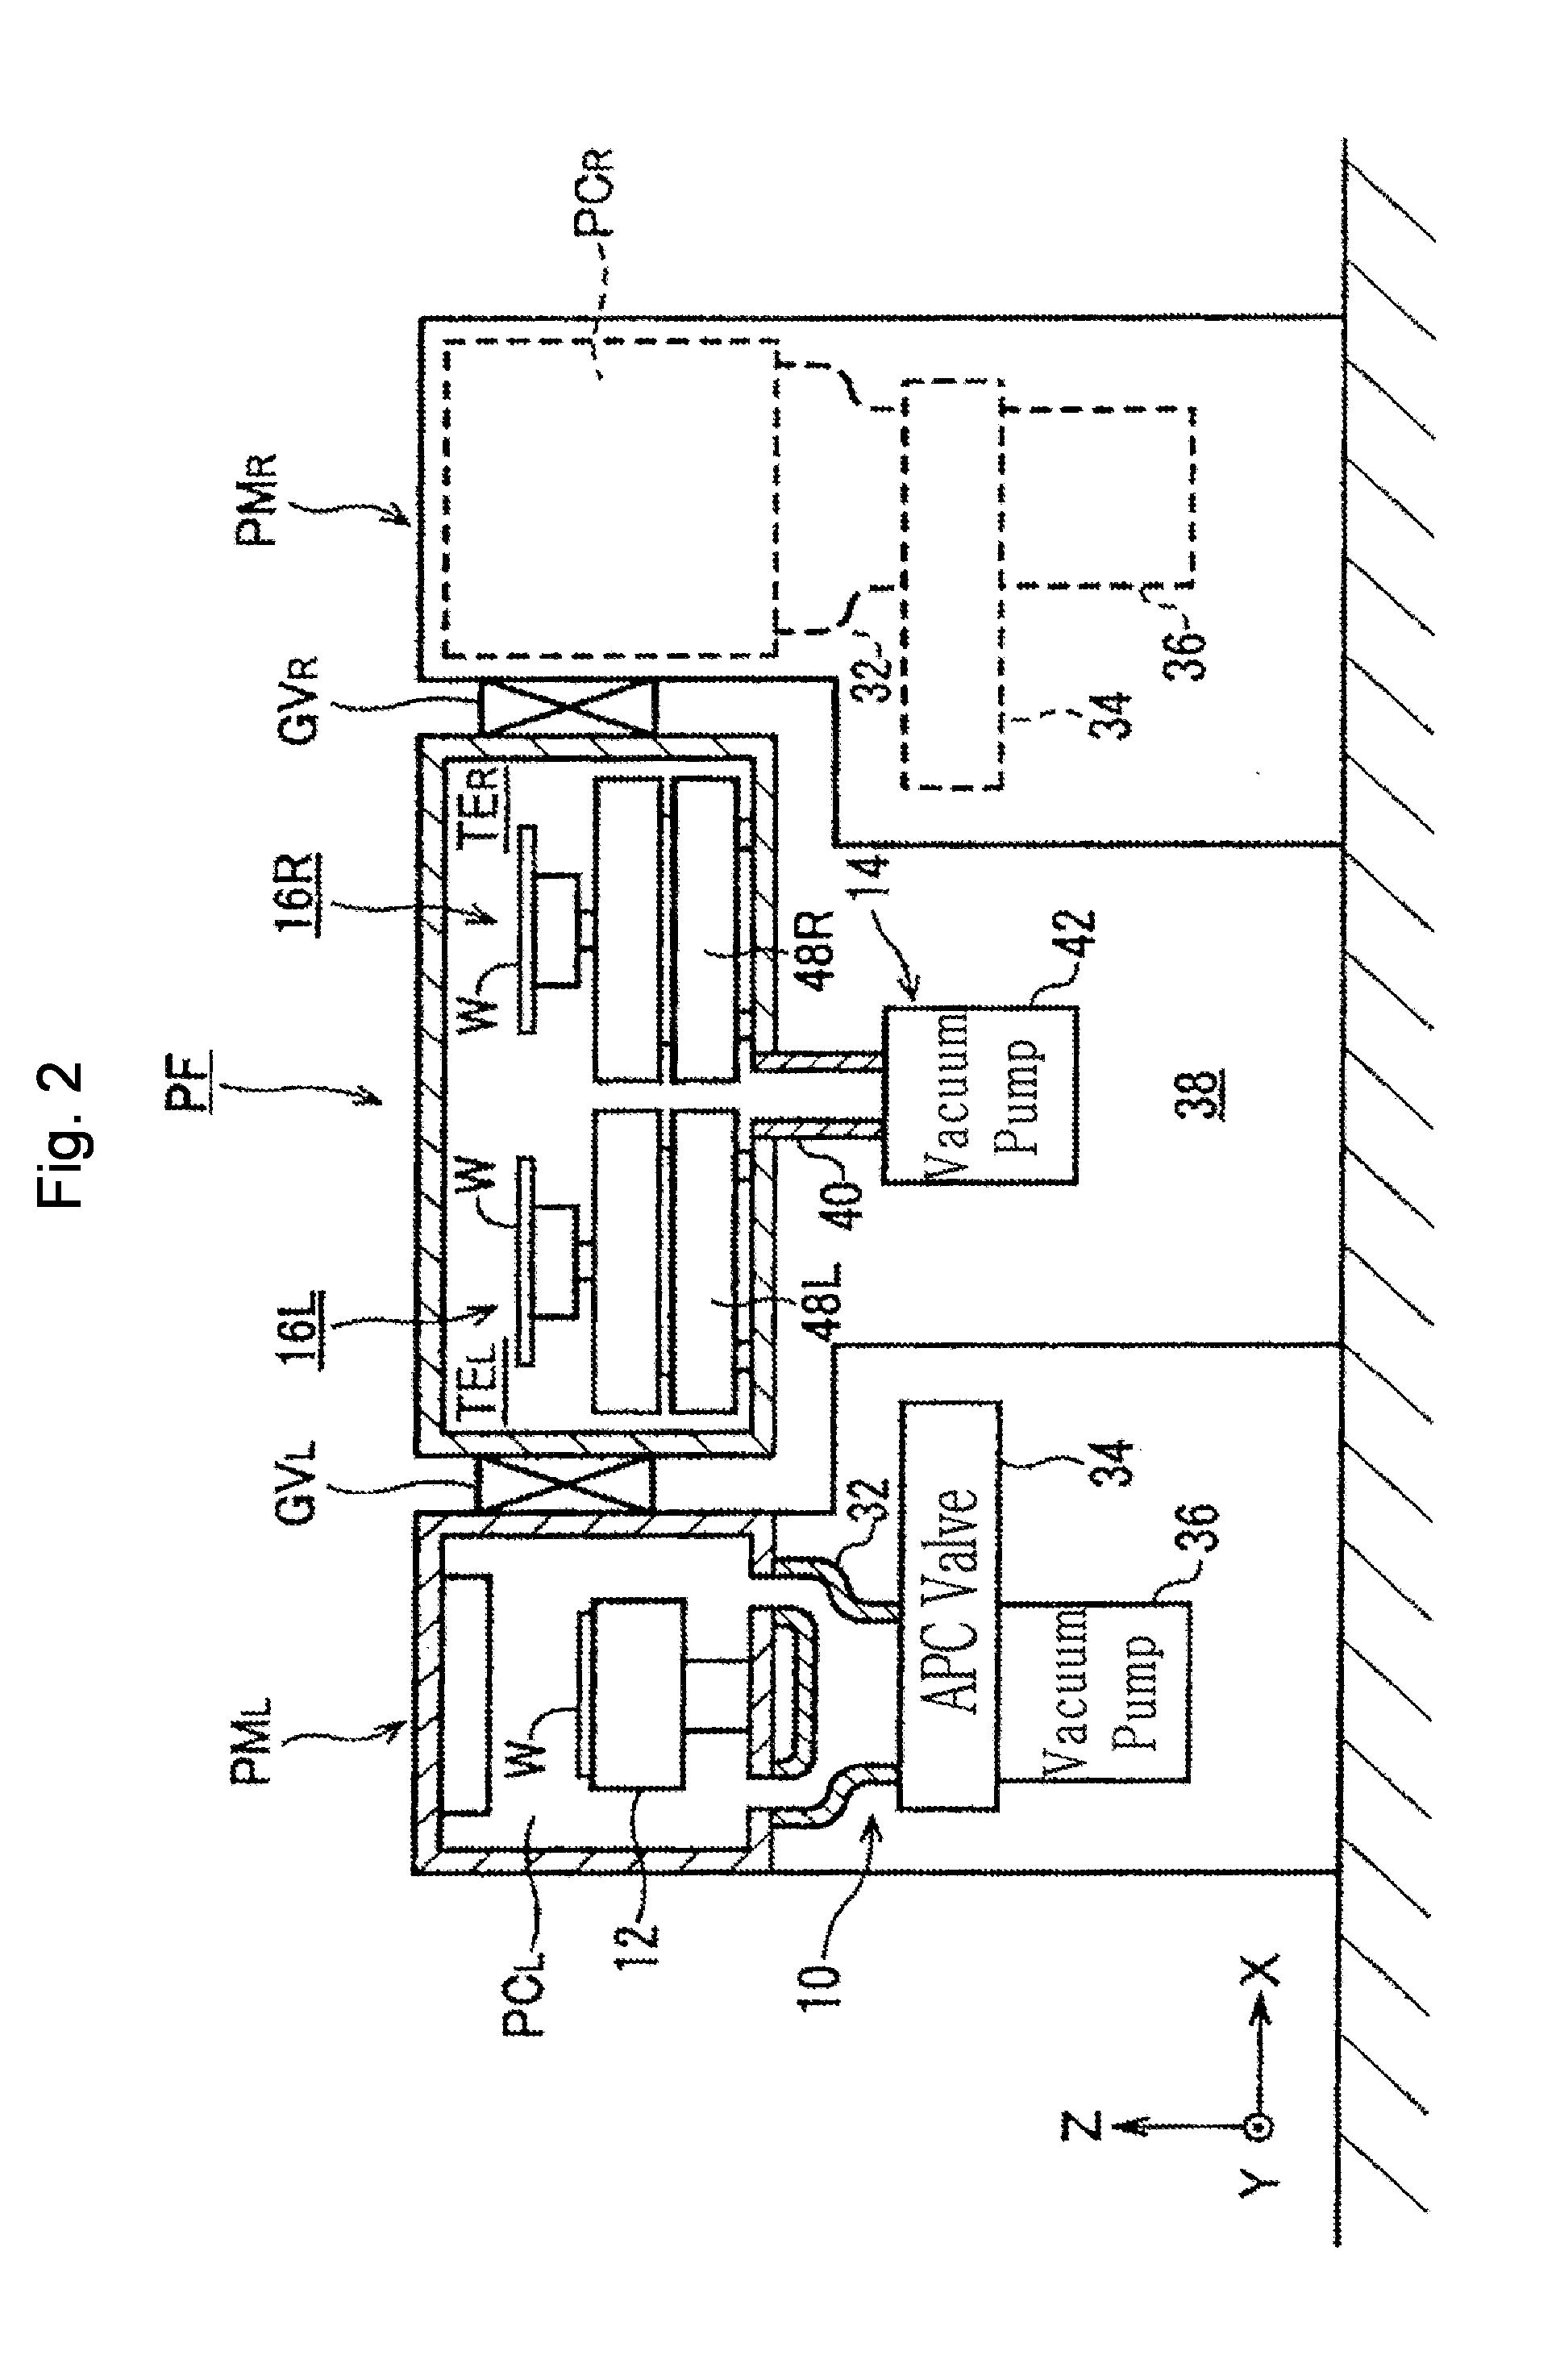 Vacuum processing apparatus and vacuum transfer apparatus